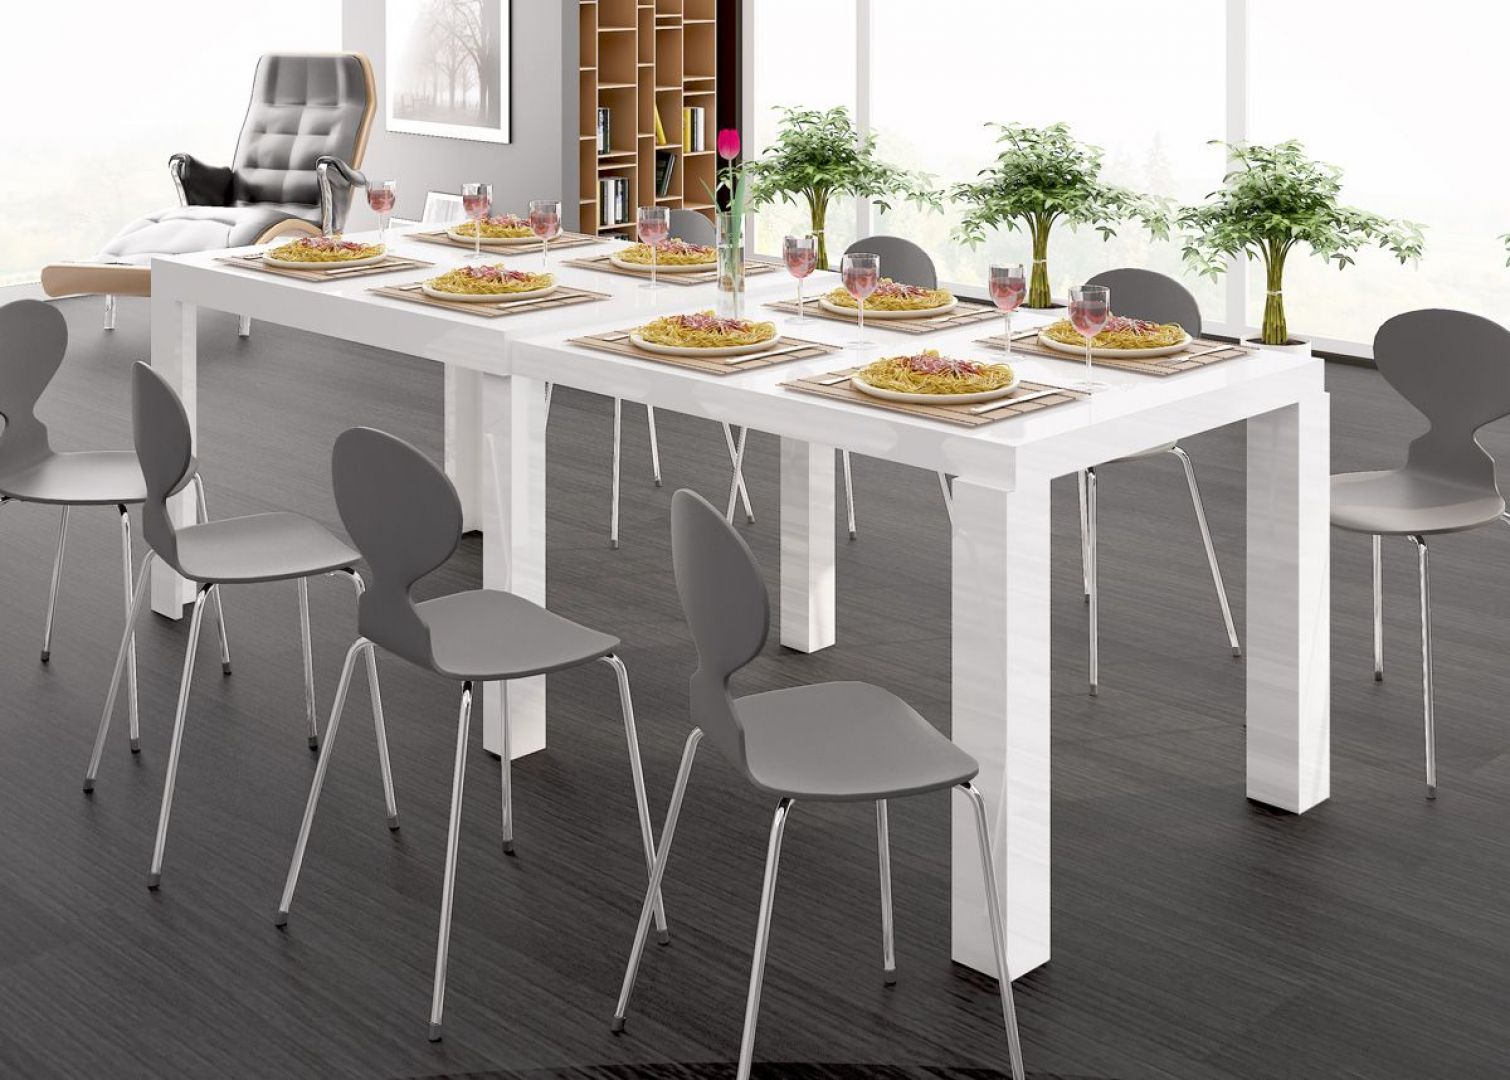 Stół Capri. Posiada możliwość ustawienia dowolnej długości od 120 do 230cm. Stabilna konstrukcja stołu została wykonana z płyty MDF pokrytej ozdobnymi dekorami. Fot. Hubertus